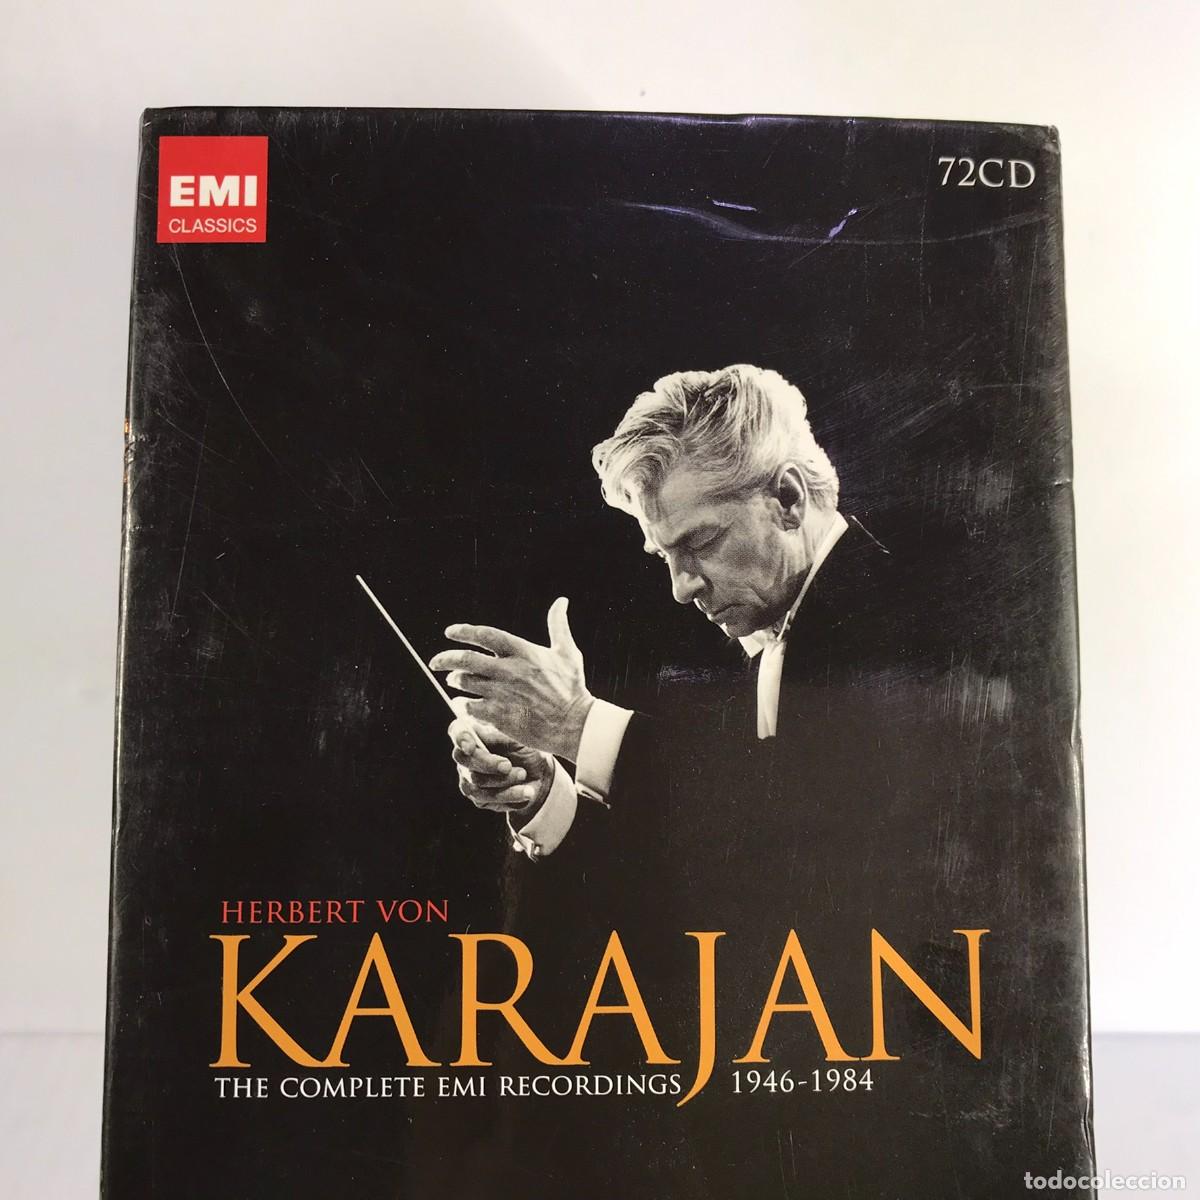 Karajan ● Complete EMI Recordings 1946-1984. Vol. 2 - Opera & Vocal ● 72 x  CD, Compilation Box Set